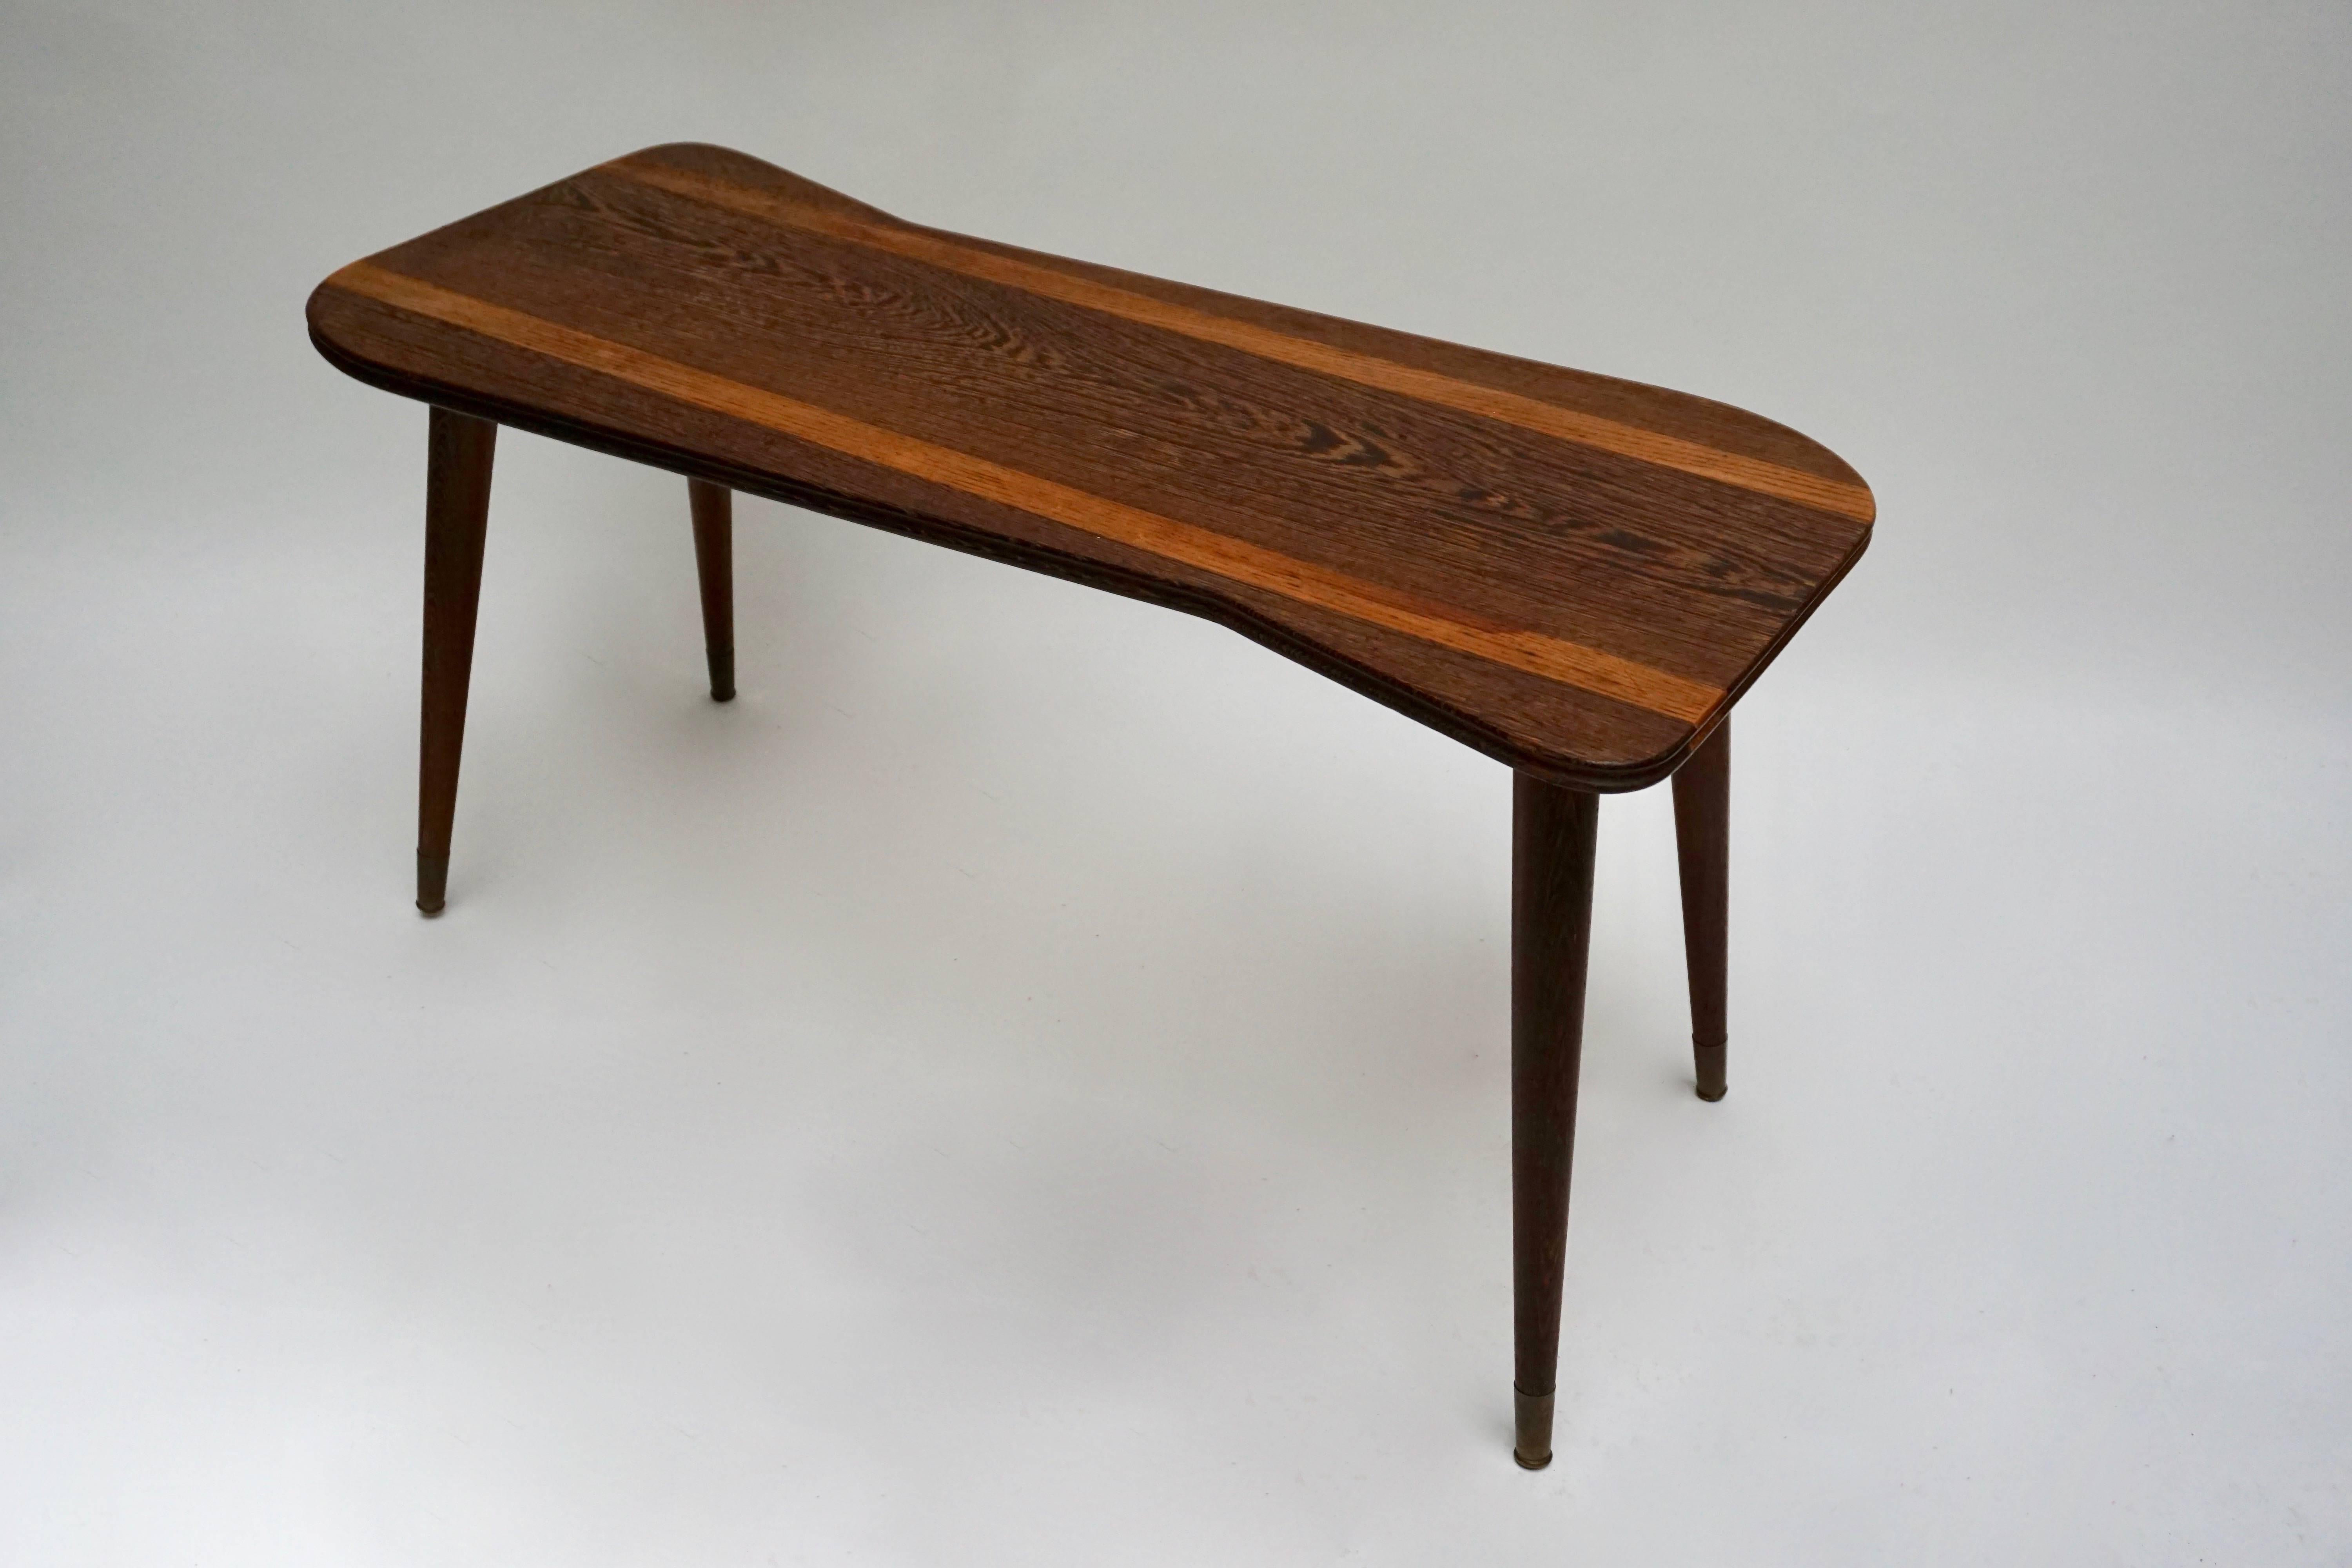 Elegant wenge wood coffee table.
Measures: Height 49 cm.
Width 98 cm.
Depth 44 cm.
      